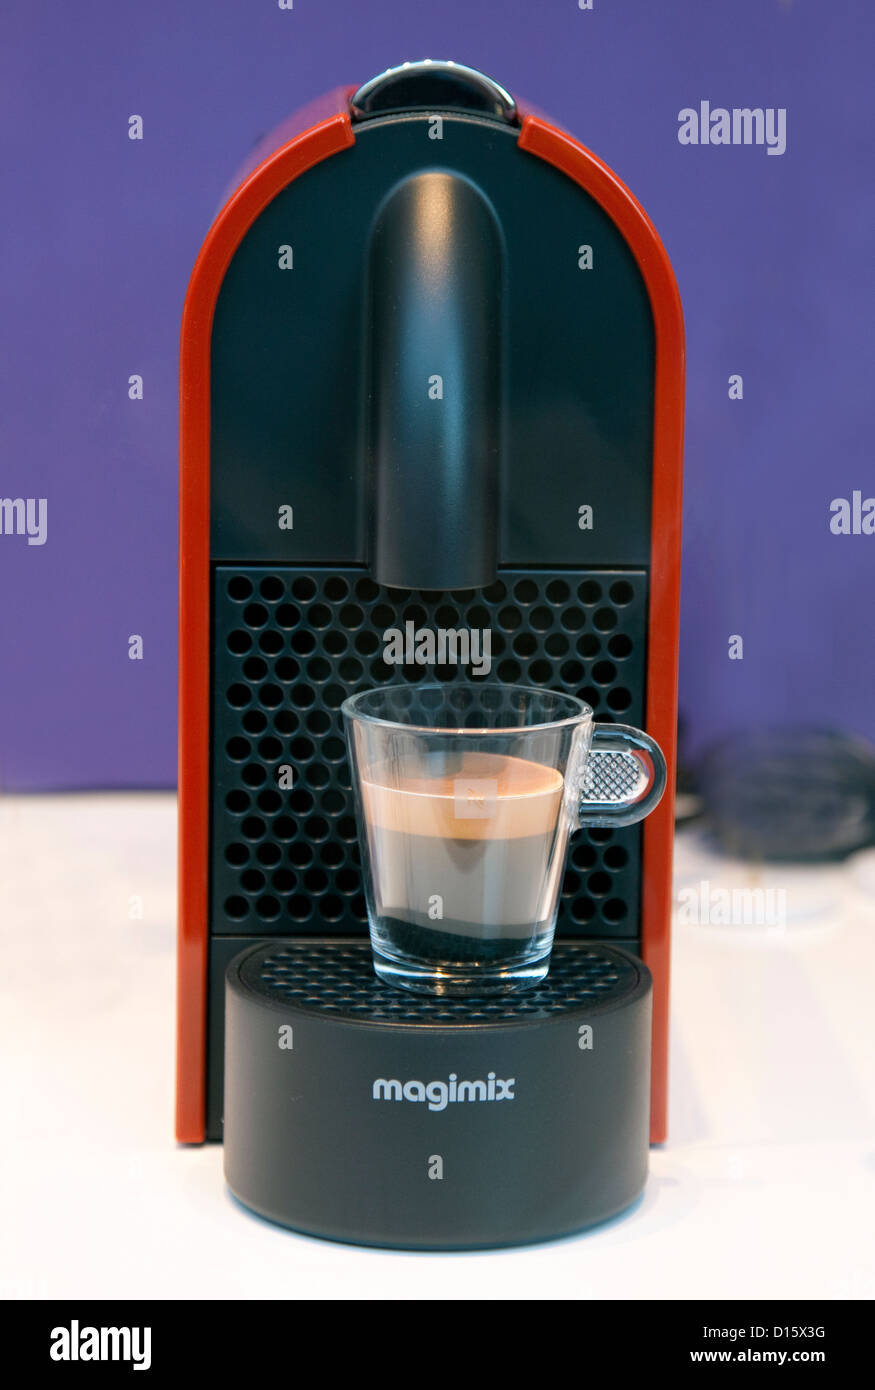 Nespresso coffee machine by Magimix, London Stock Photo - Alamy